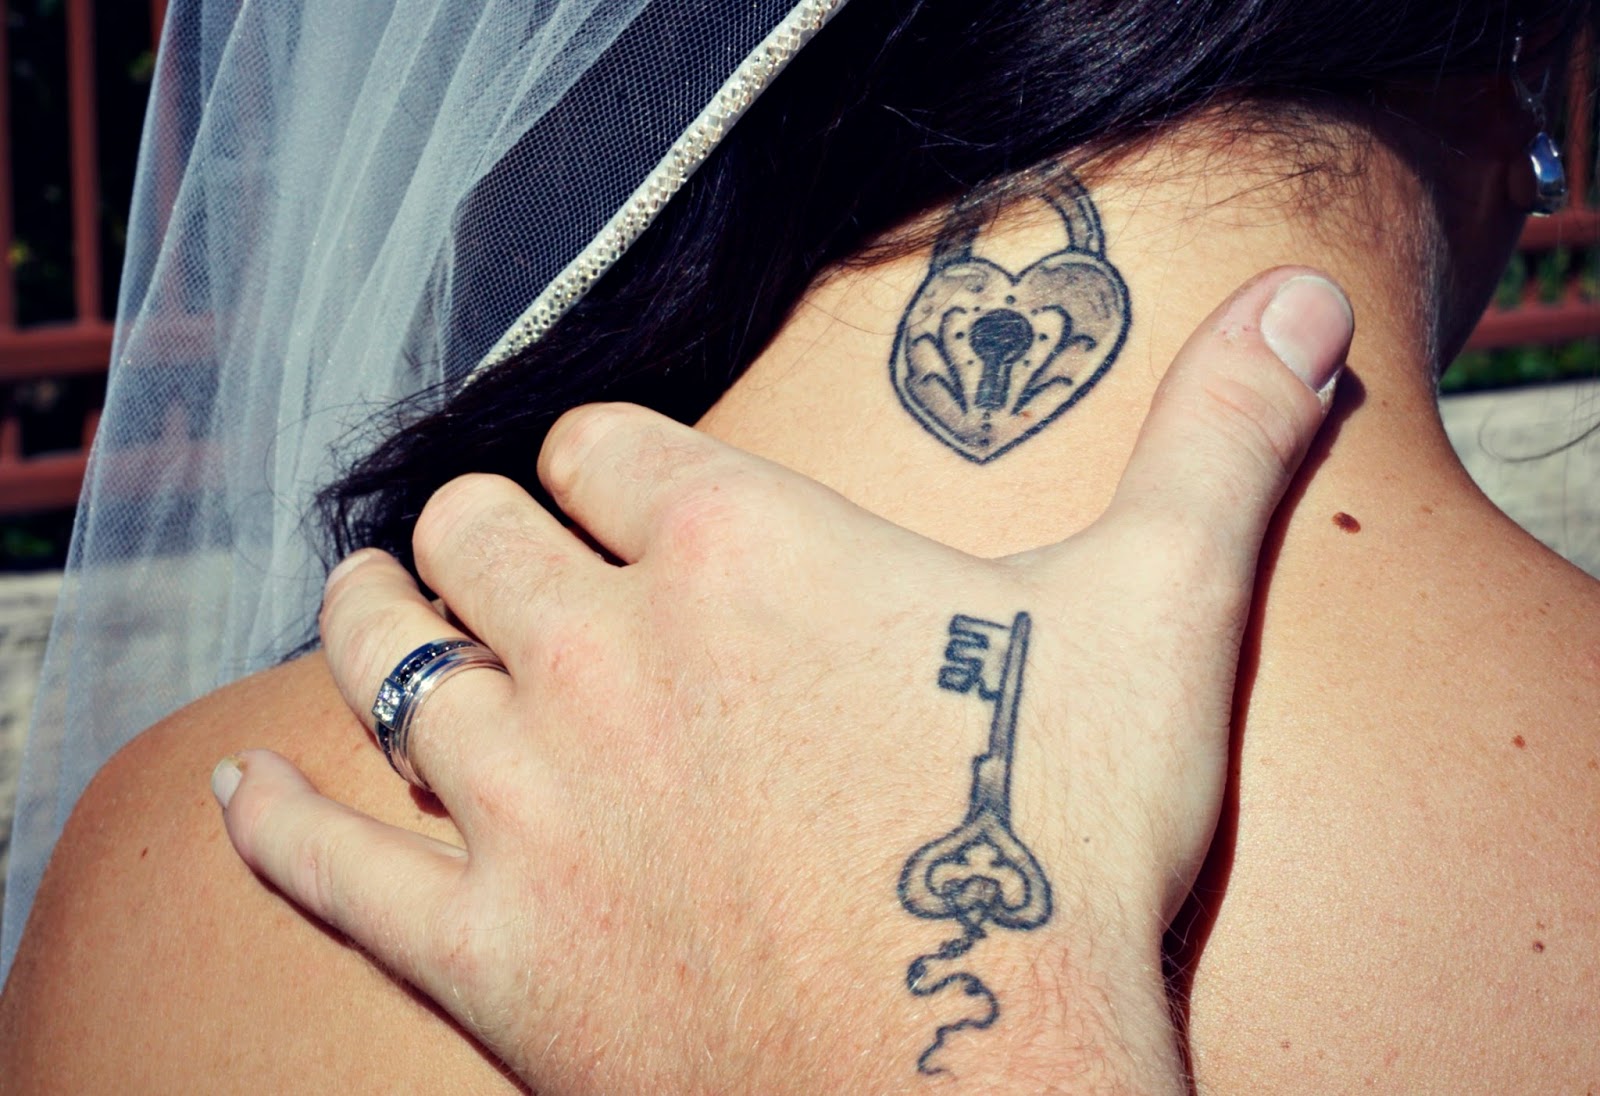 Una pareja de novios, el la acaricia por el cuello, llevan tatuajes de llave y candado, el chico lleva la llave tatuada en la mano, la novia lleva tatuado el candado en la nuca